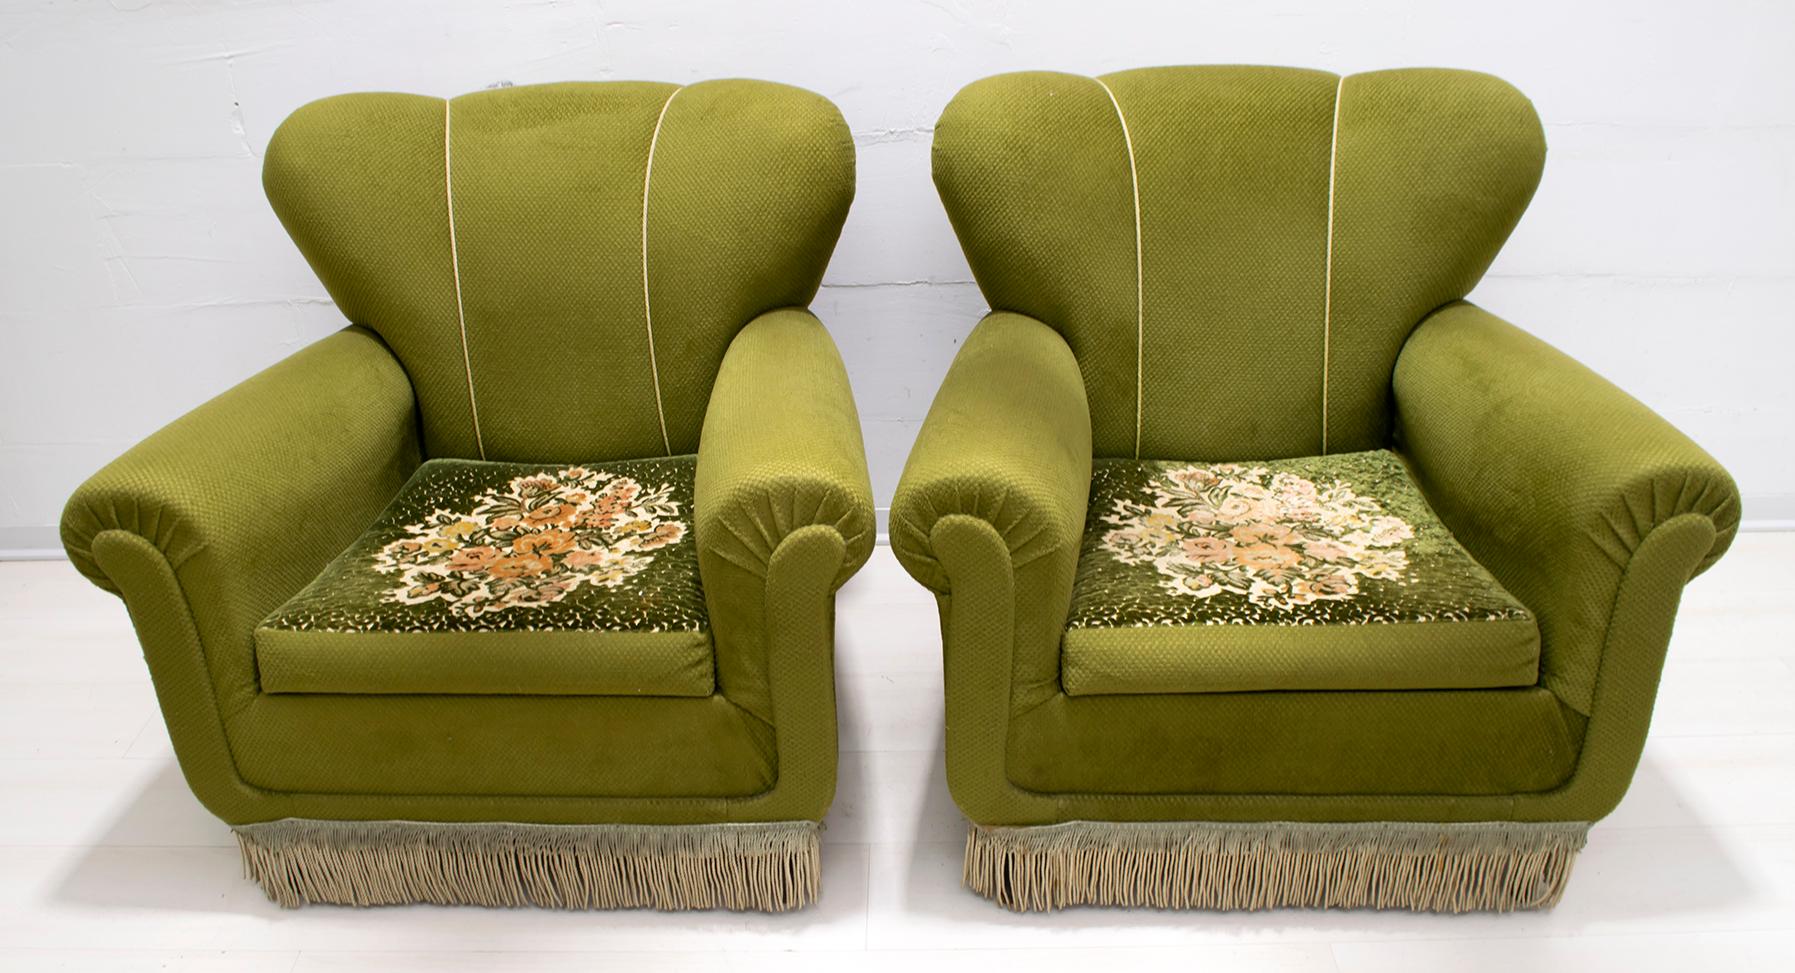 Dieses Paar Sessel aus den 1950er Jahren, die mit dem Originalstoff der damaligen Zeit bezogen sind, befinden sich in ausgezeichnetem Zustand, wie auf dem Foto zu sehen ist.
